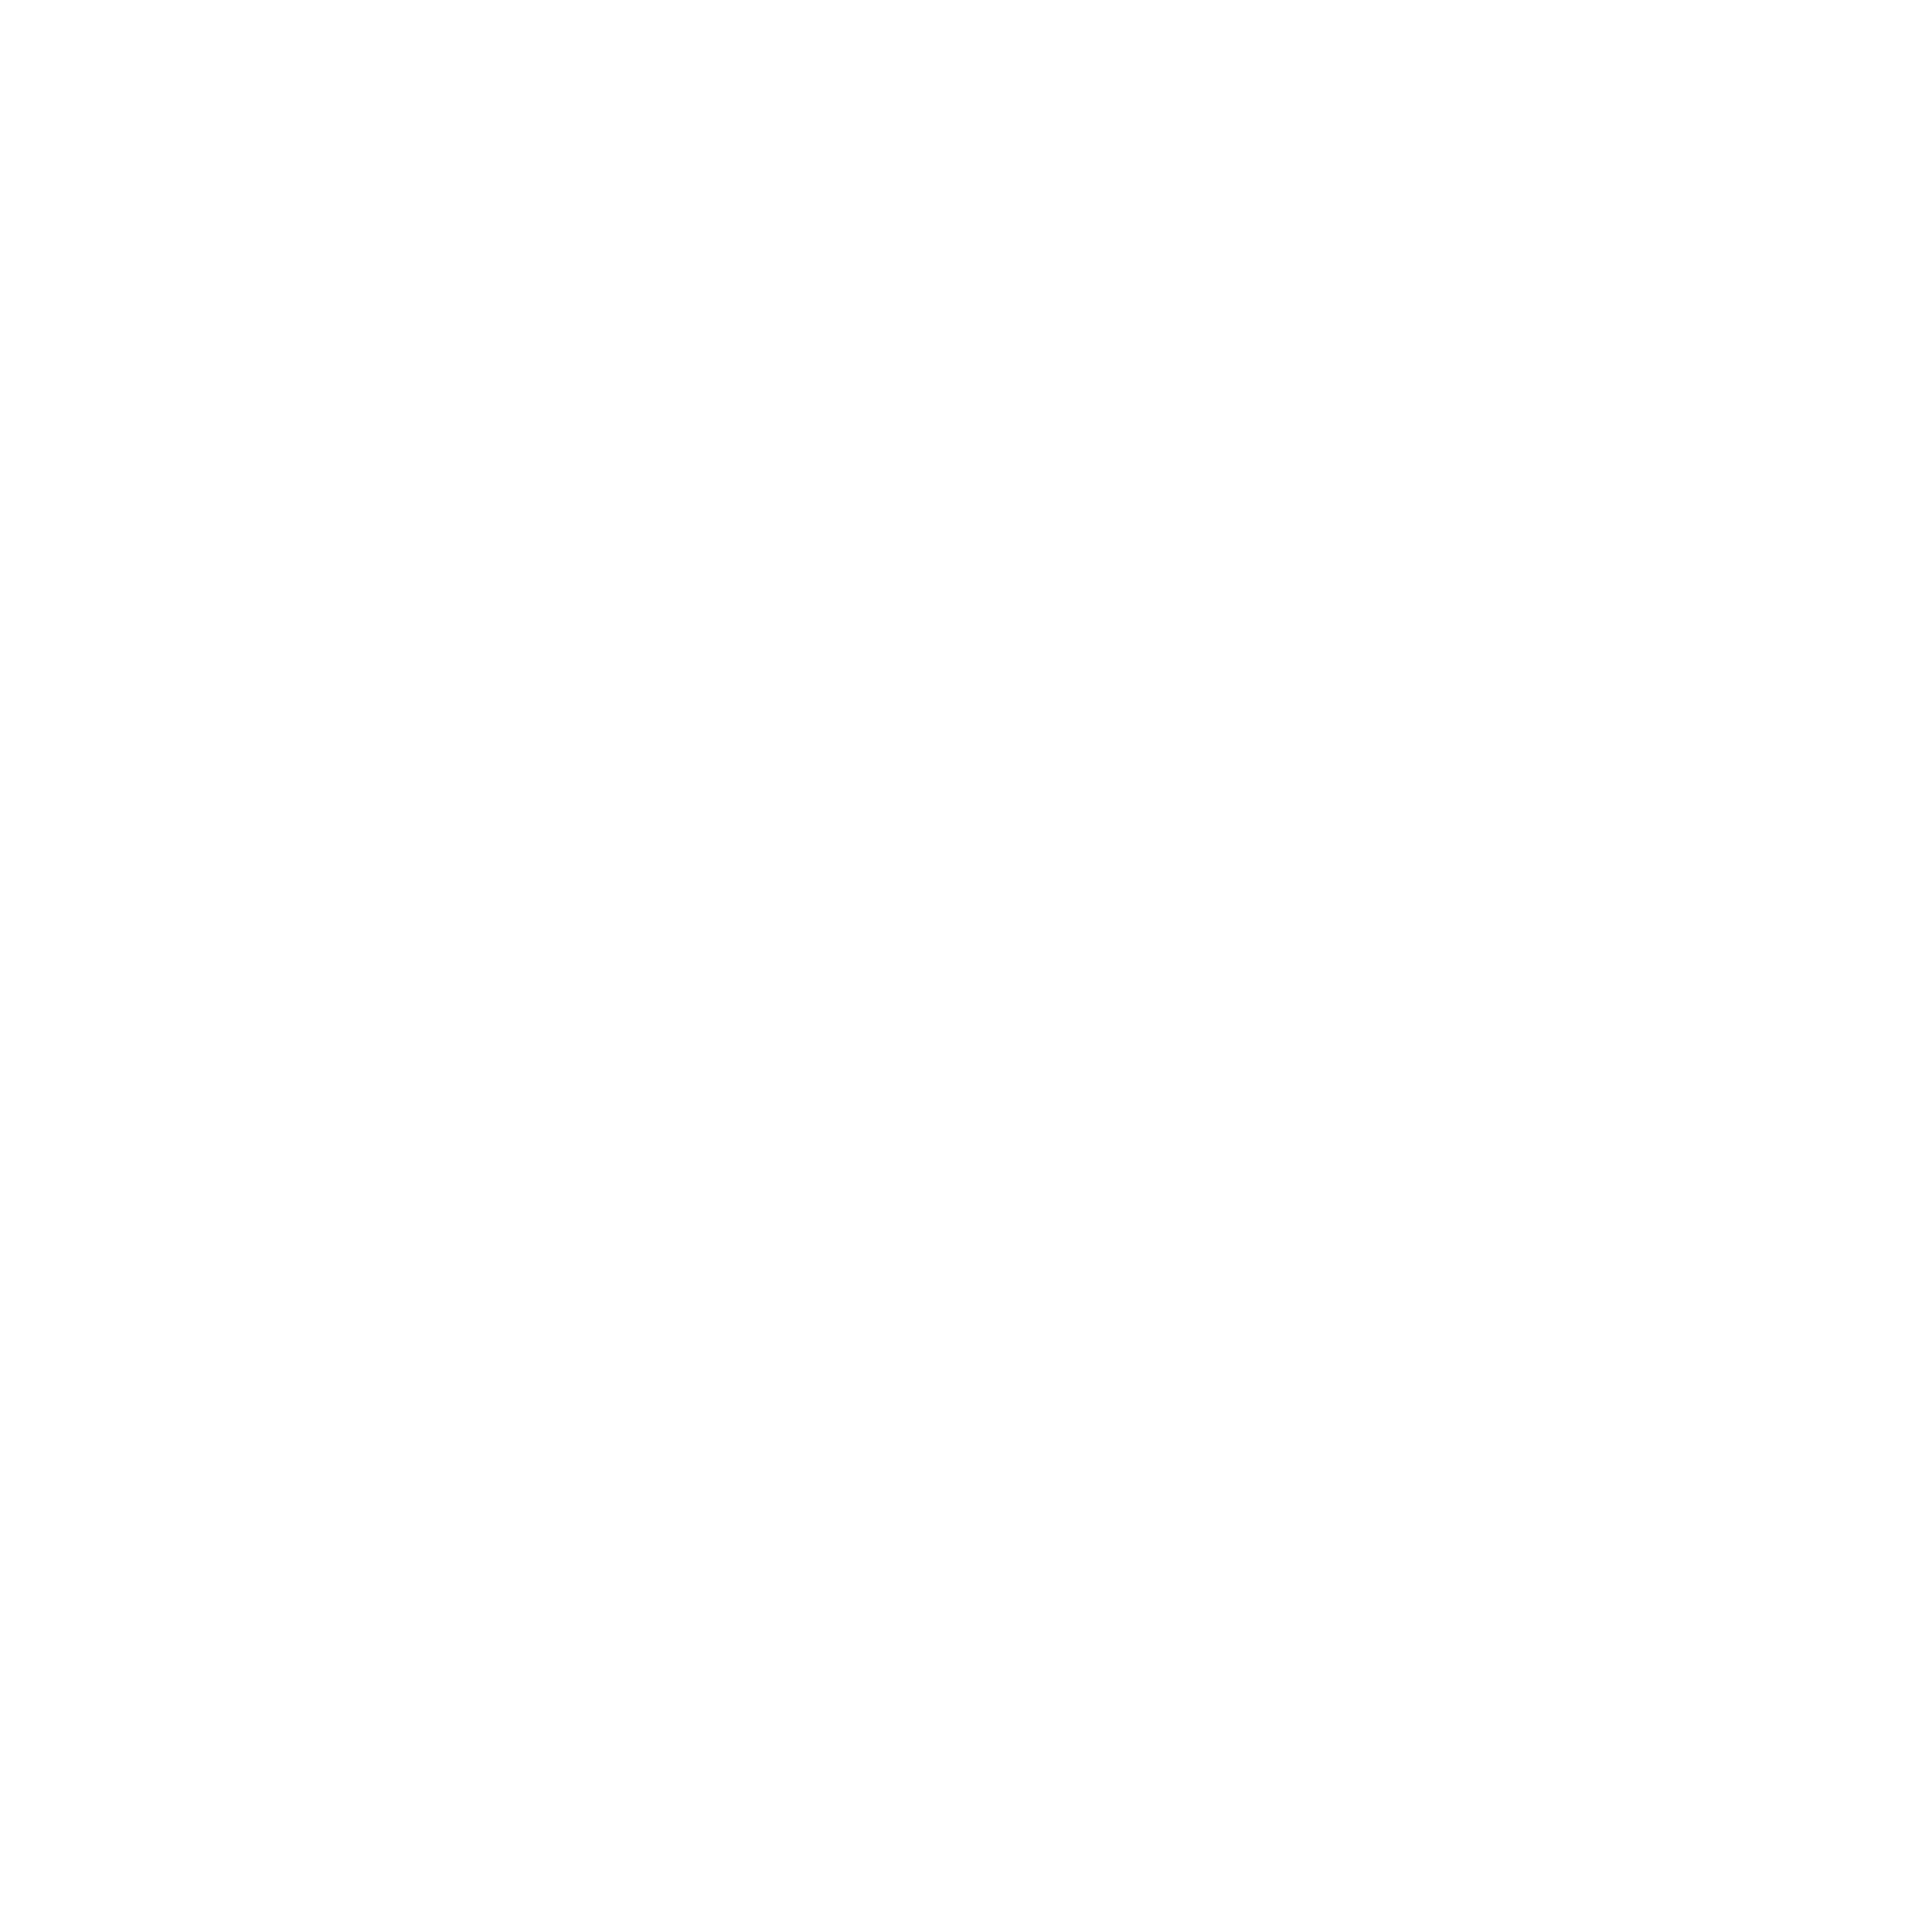 David lopez juan Juan David